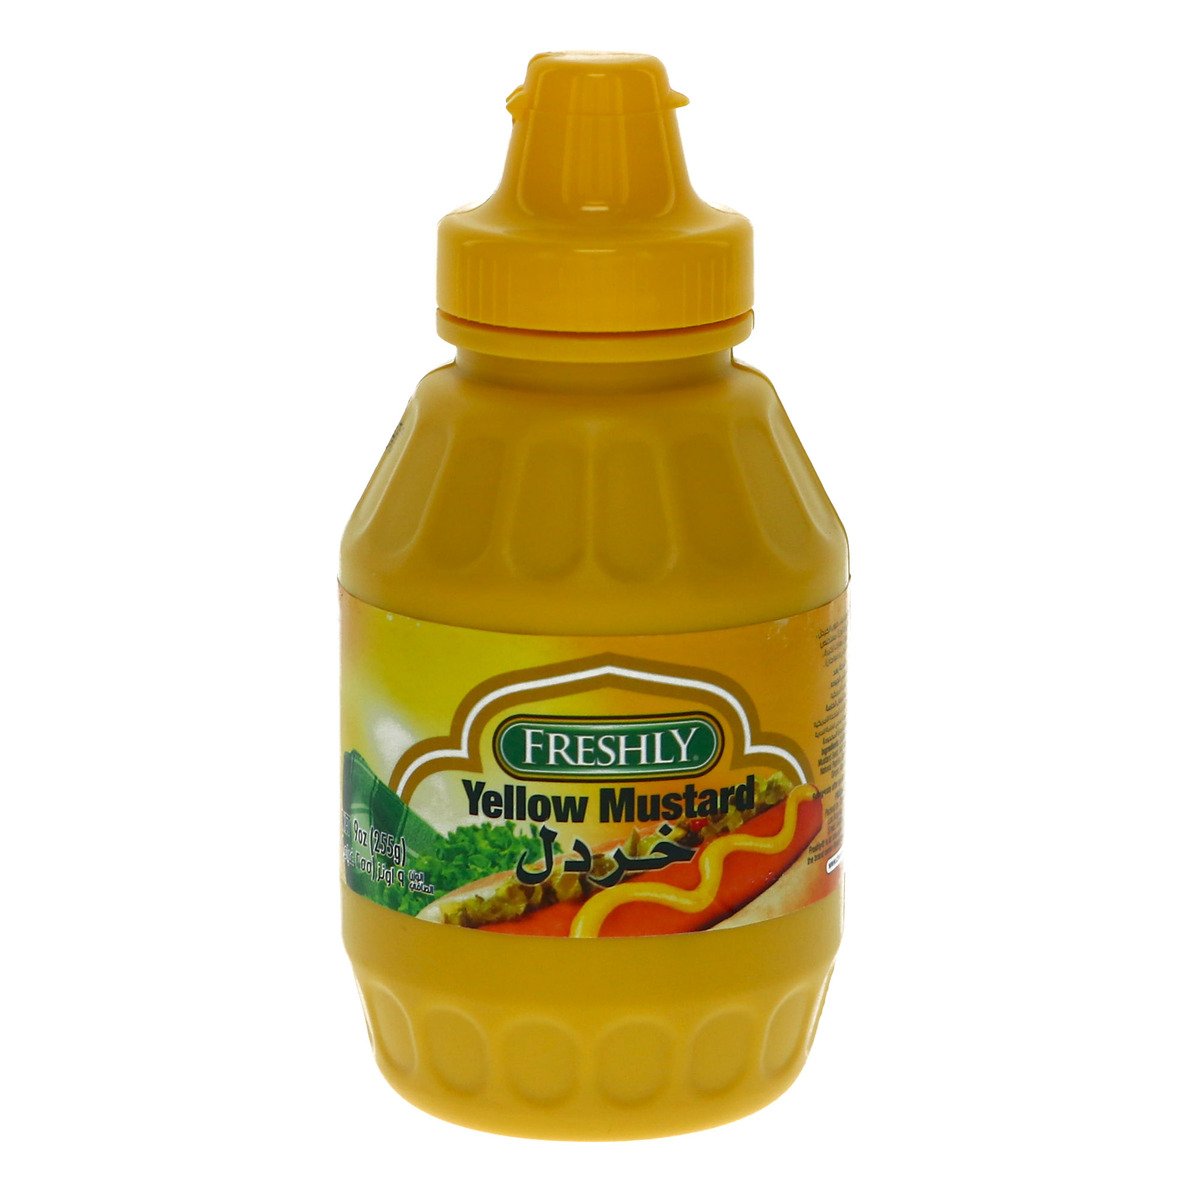 اشتري قم بشراء فرشلي خردل أصفر 255 جم Online at Best Price من الموقع - من لولو هايبر ماركت Mustard في السعودية